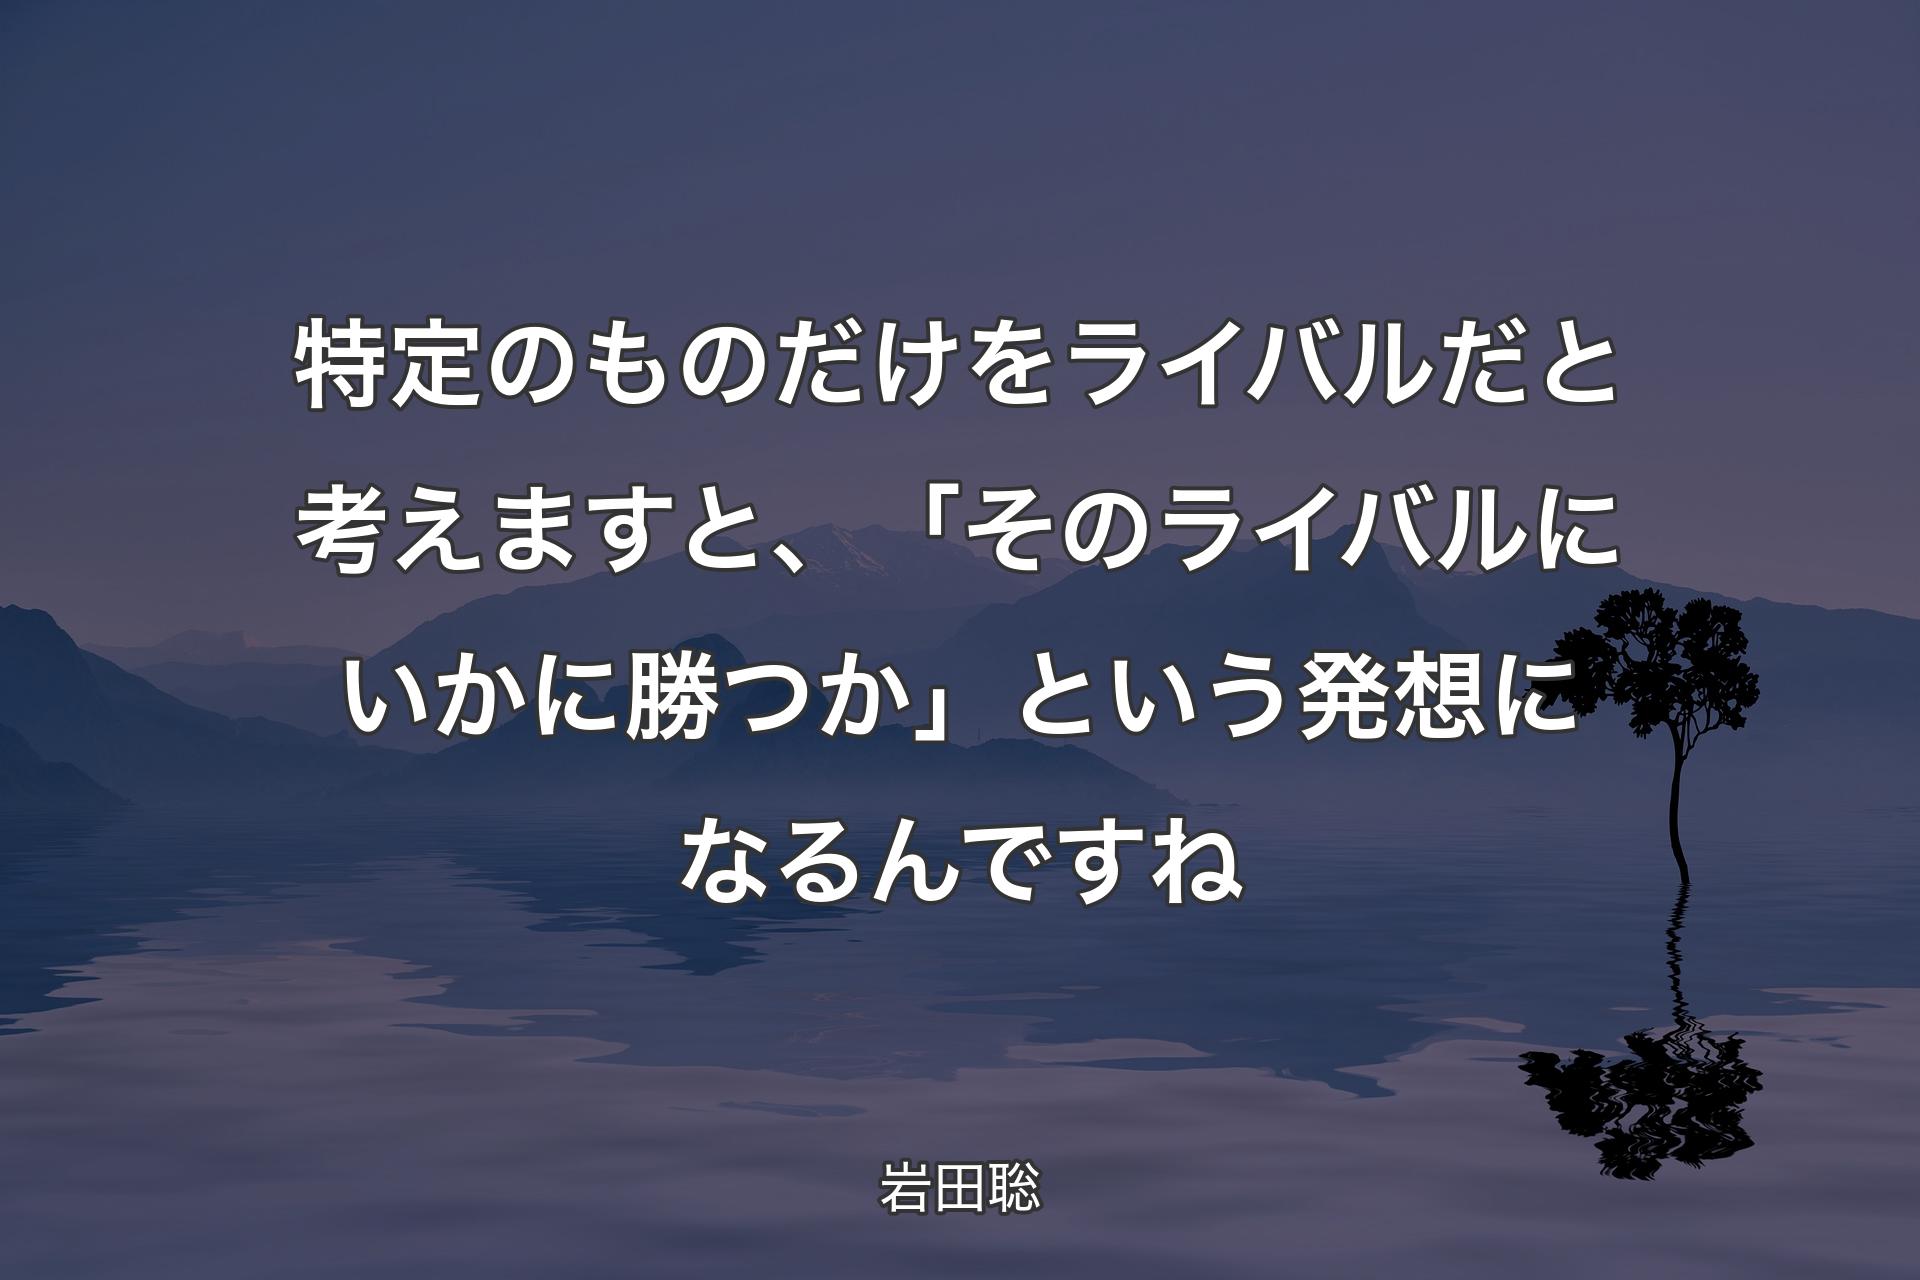 【背景4】特定のものだけをライバルだと考えますと、「そのライバルにいかに勝つか」という発想になるんですね - 岩田聡